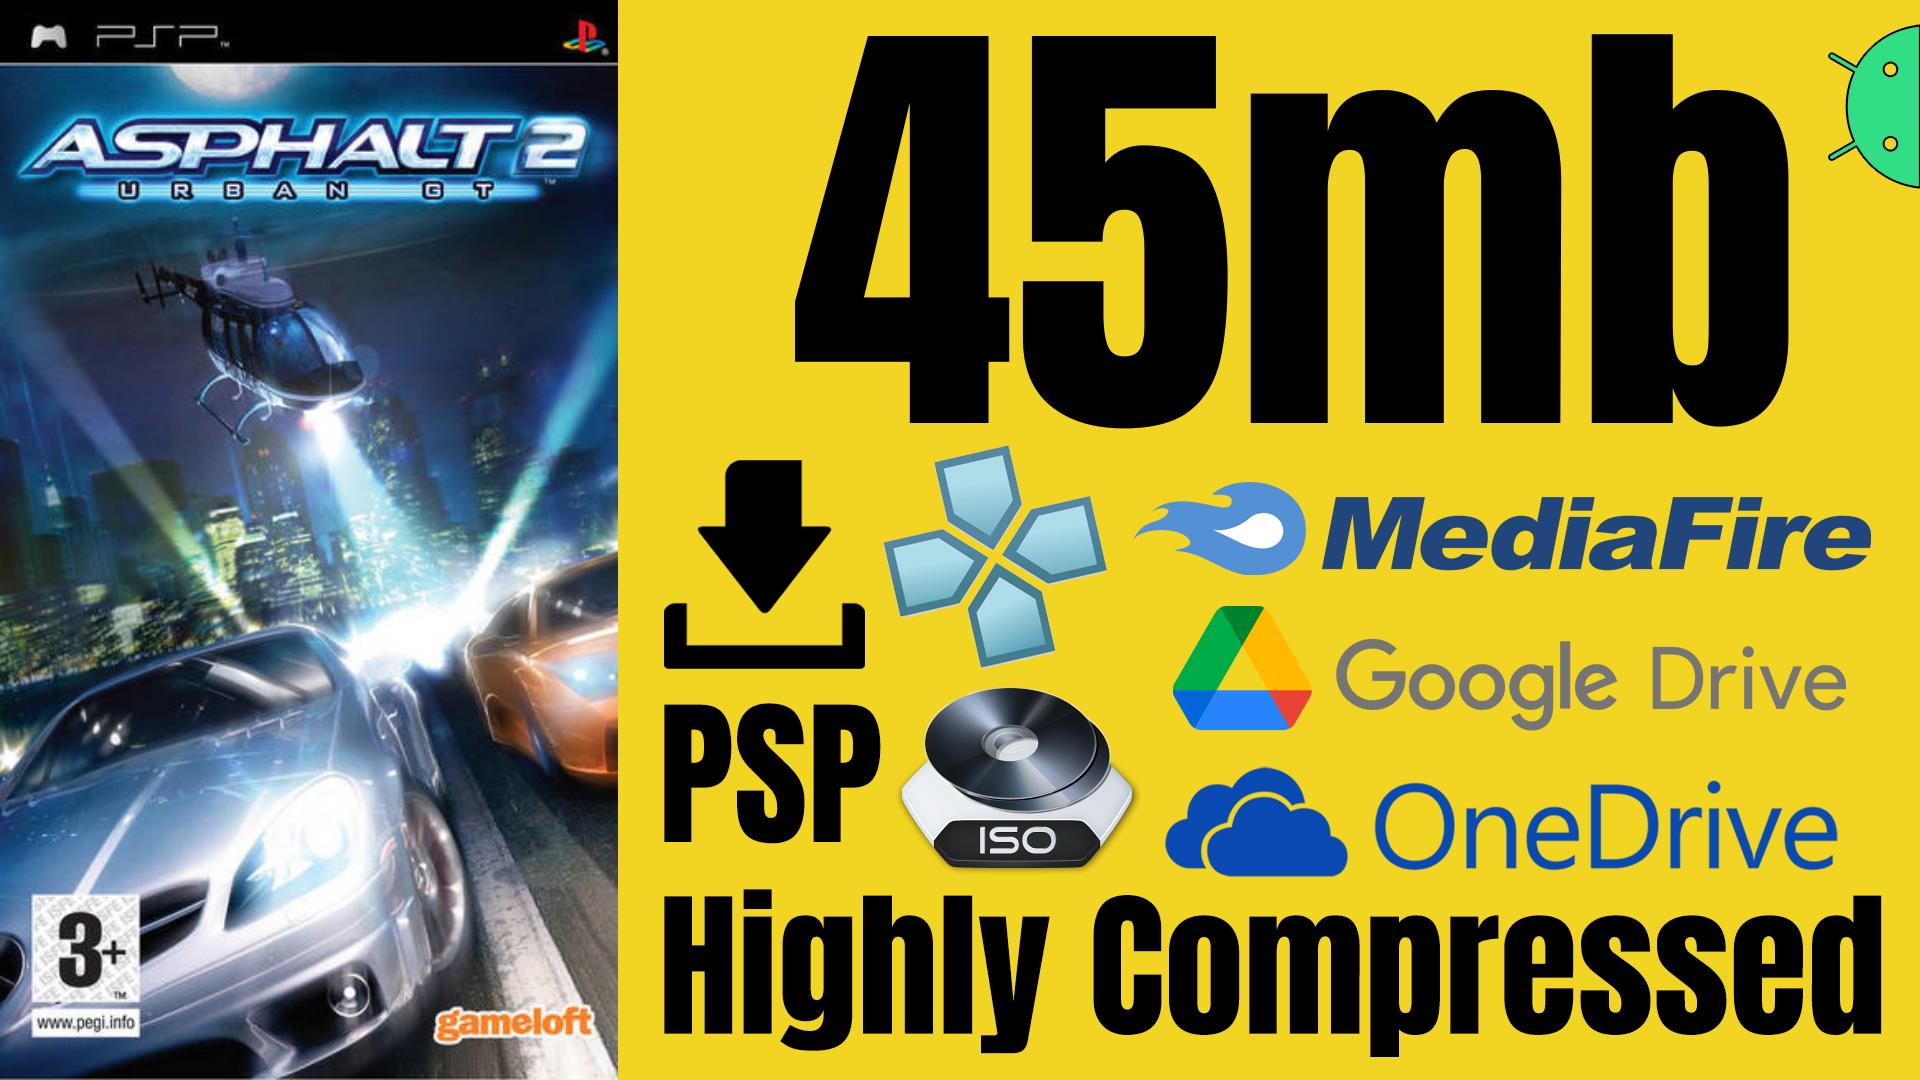 Asphalt Urban GT 2 PSP ISO Highly Compressed Game Download